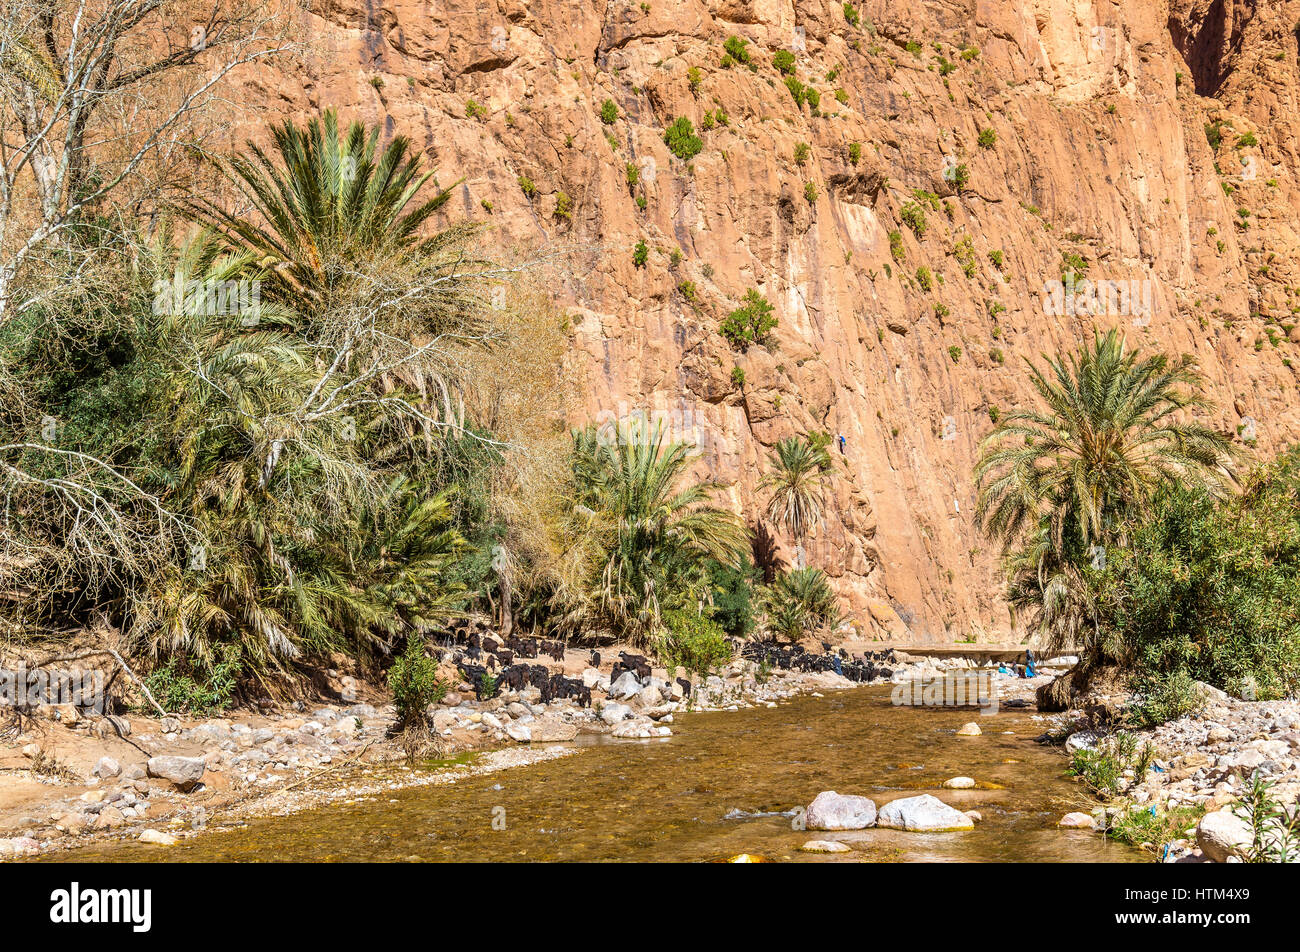 Troupeau de chèvres à la rivière Todra, Maroc Banque D'Images